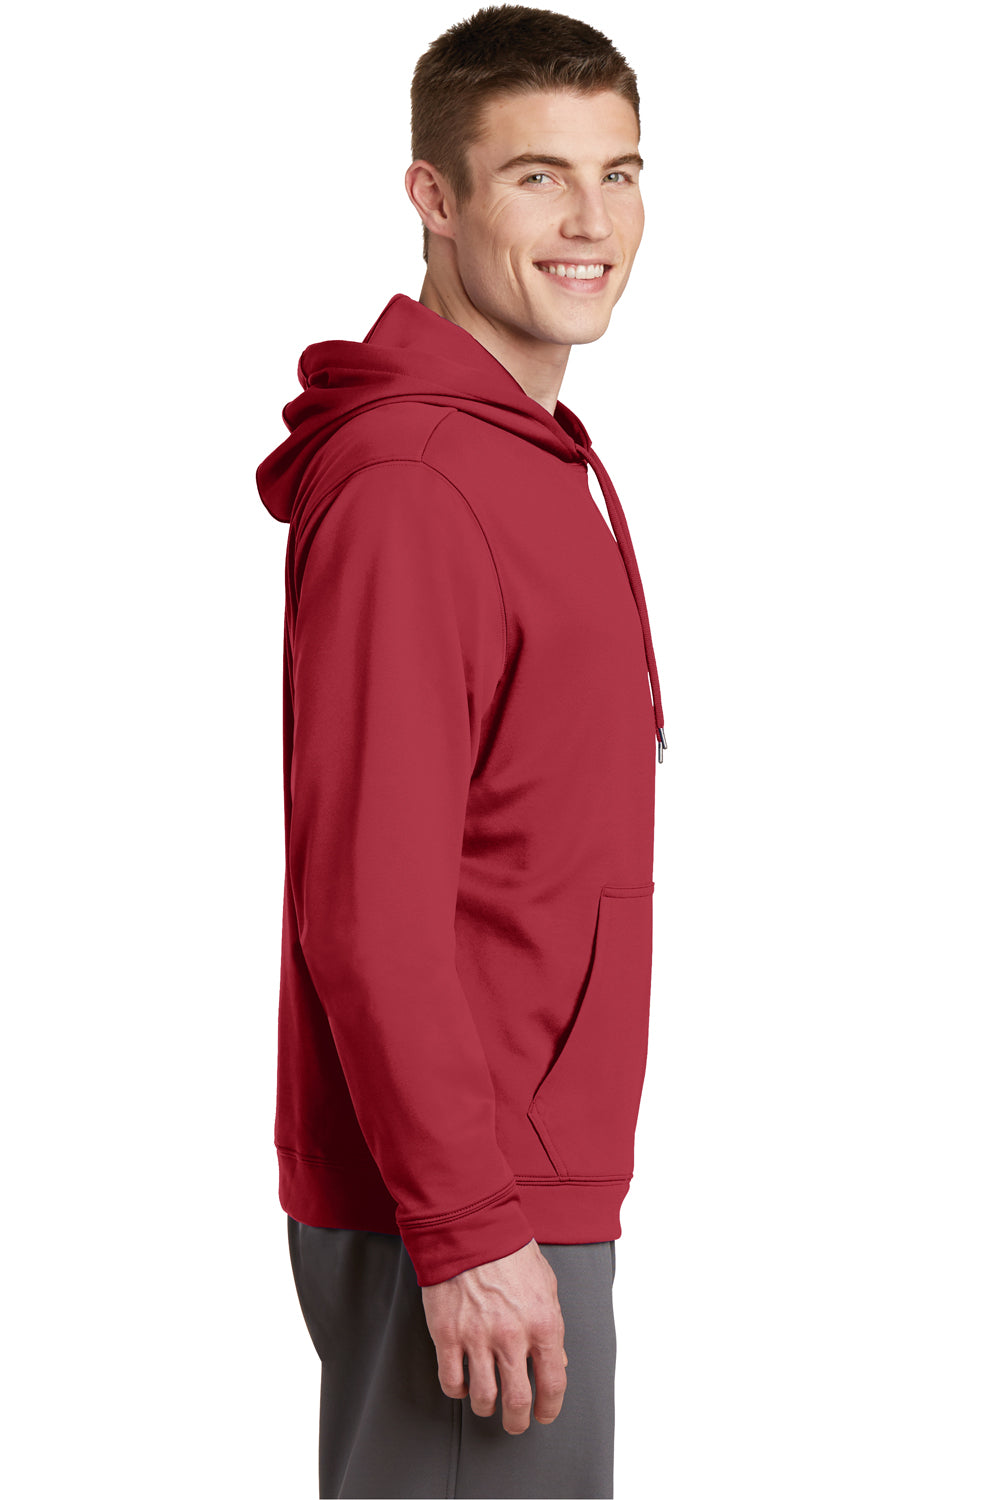 Sport-Tek F244 Mens Sport-Wick Moisture Wicking Fleece Hooded Sweatshirt Hoodie Red Side